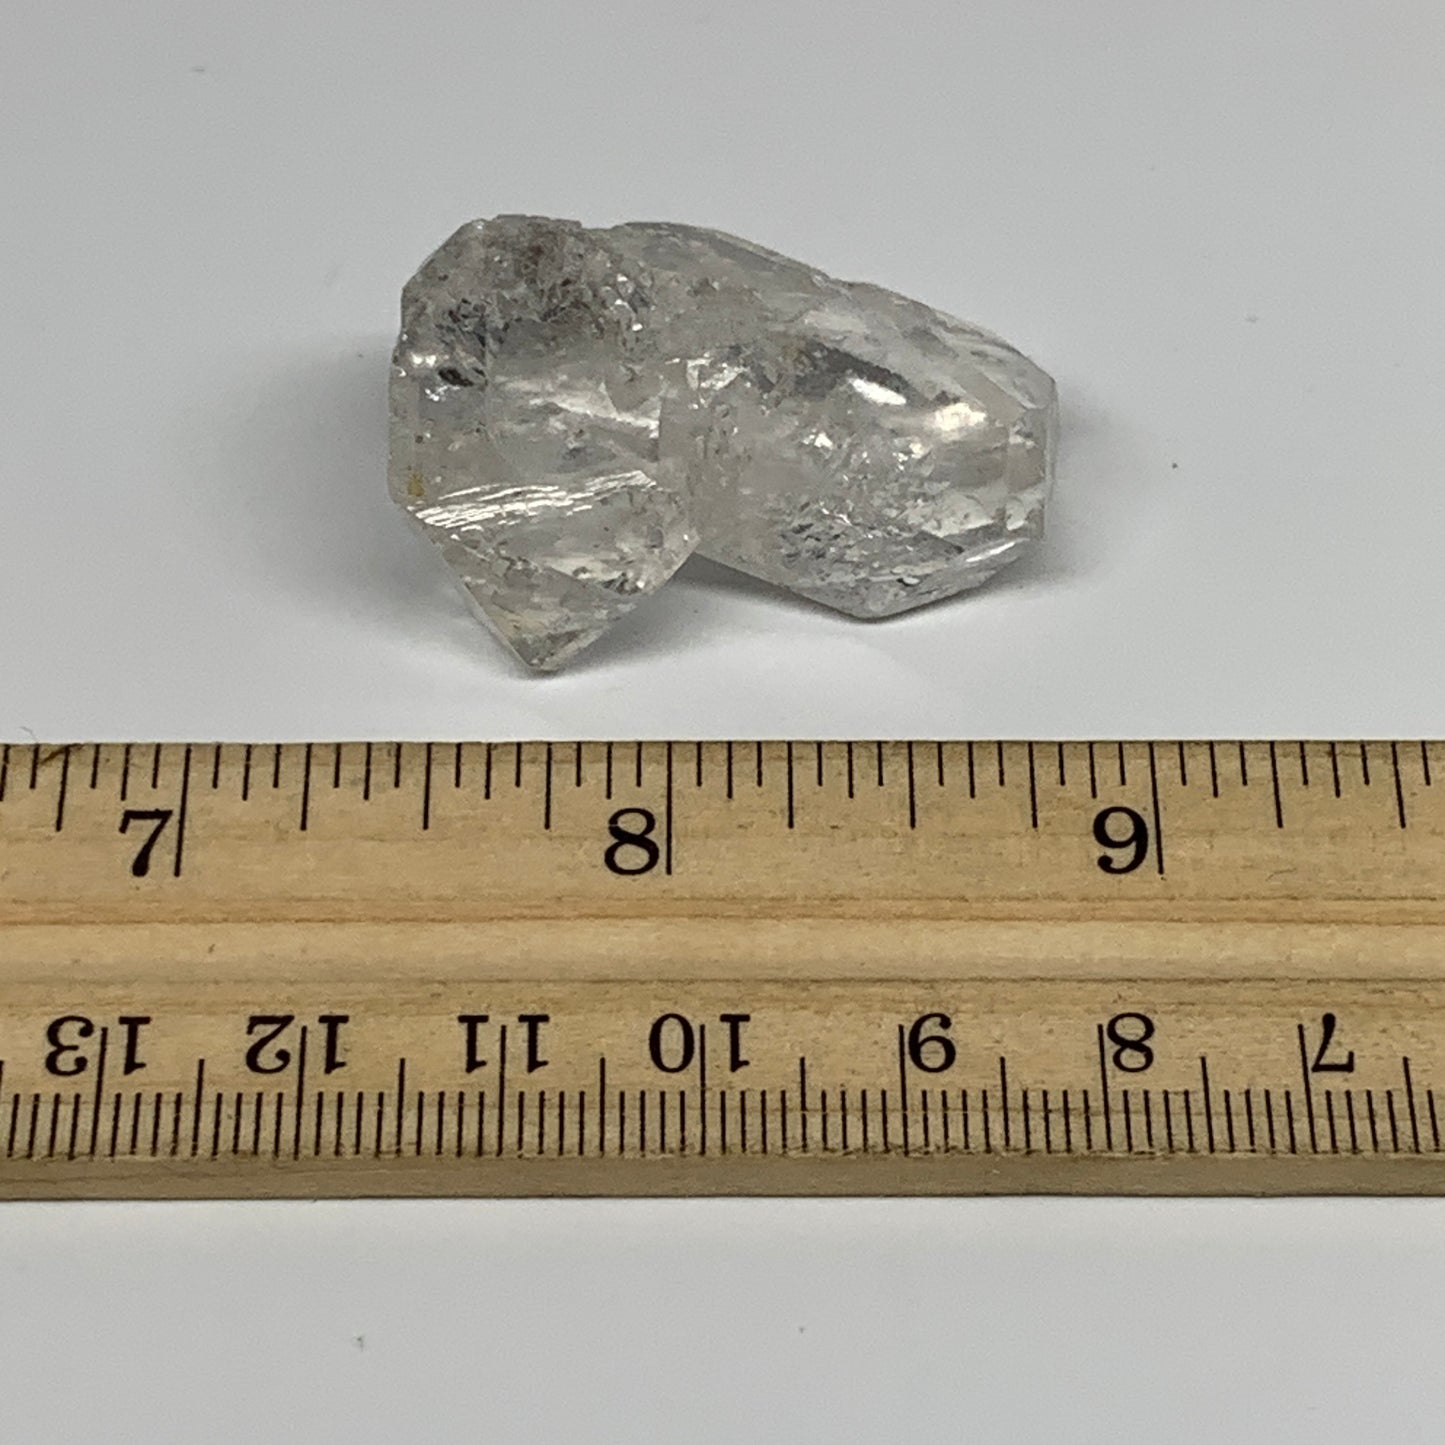 16.8g, 1.6"x0.9"x0.6", Natural Window Quartz Crystal Terminated @Pakistan,B27540